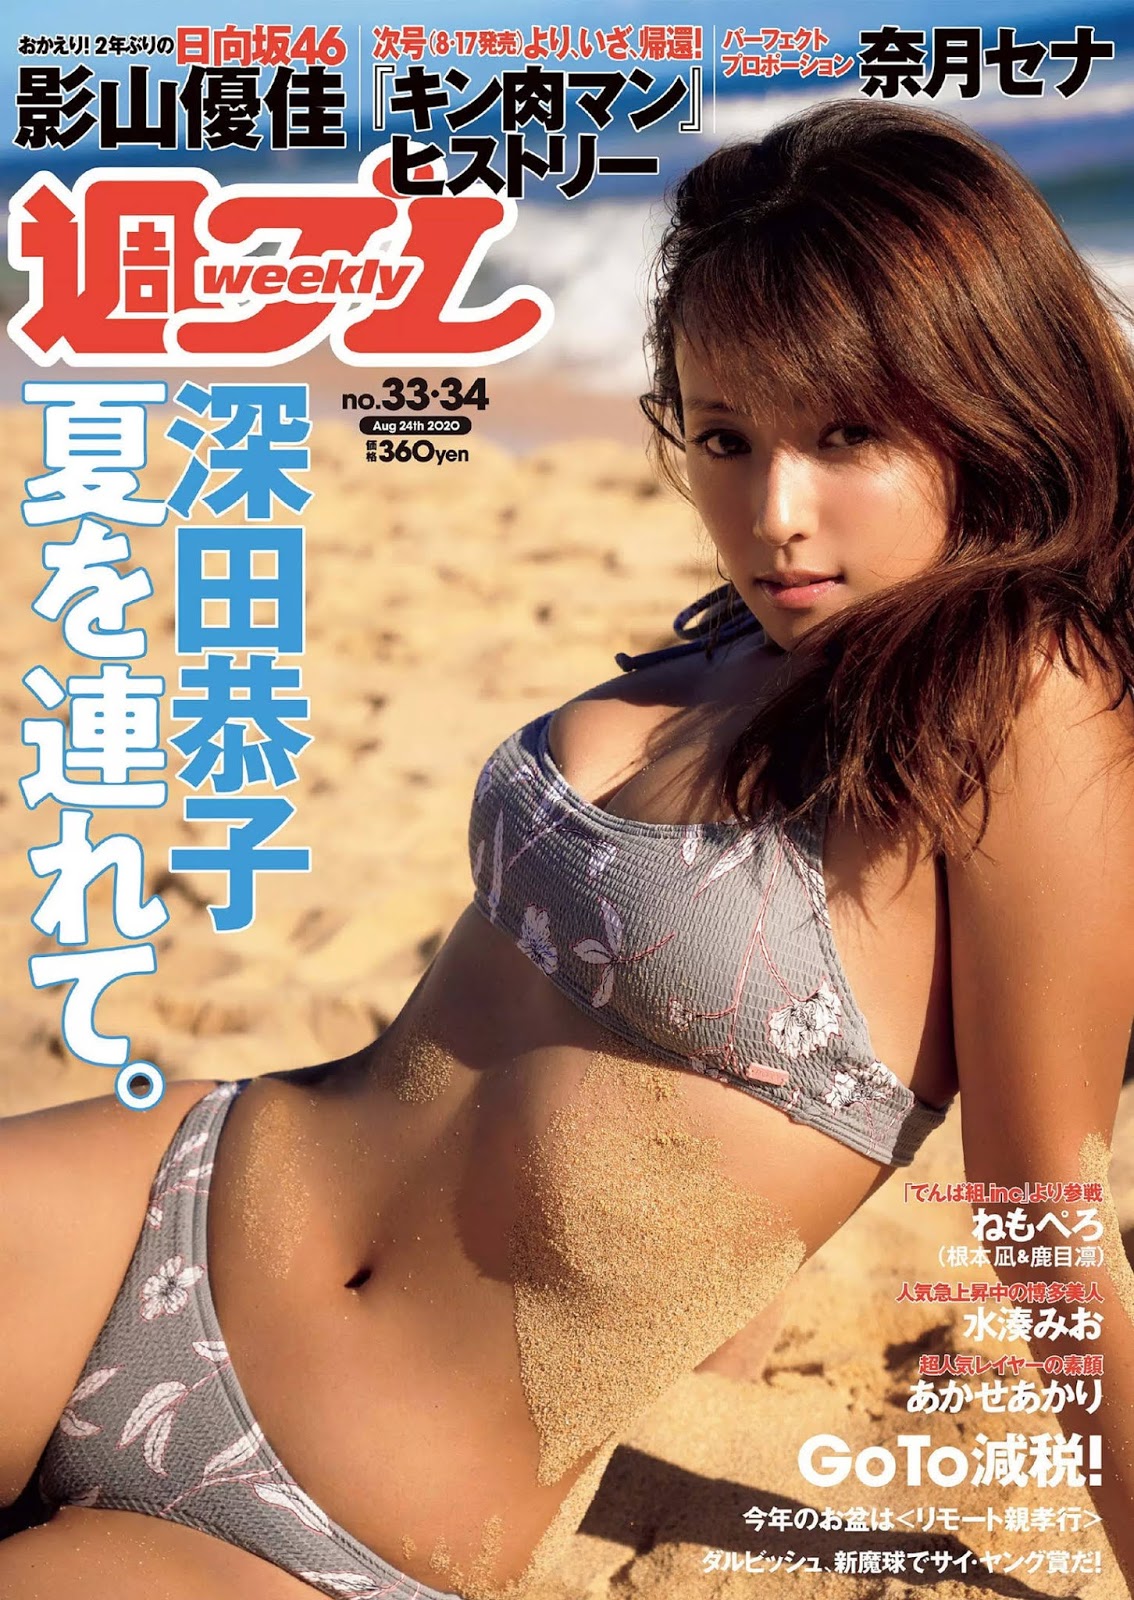 Kyoko Fukada 深田恭子, Weekly Playboy 2020 No.33-34 (週刊プレイボーイ 2020年33-34号)